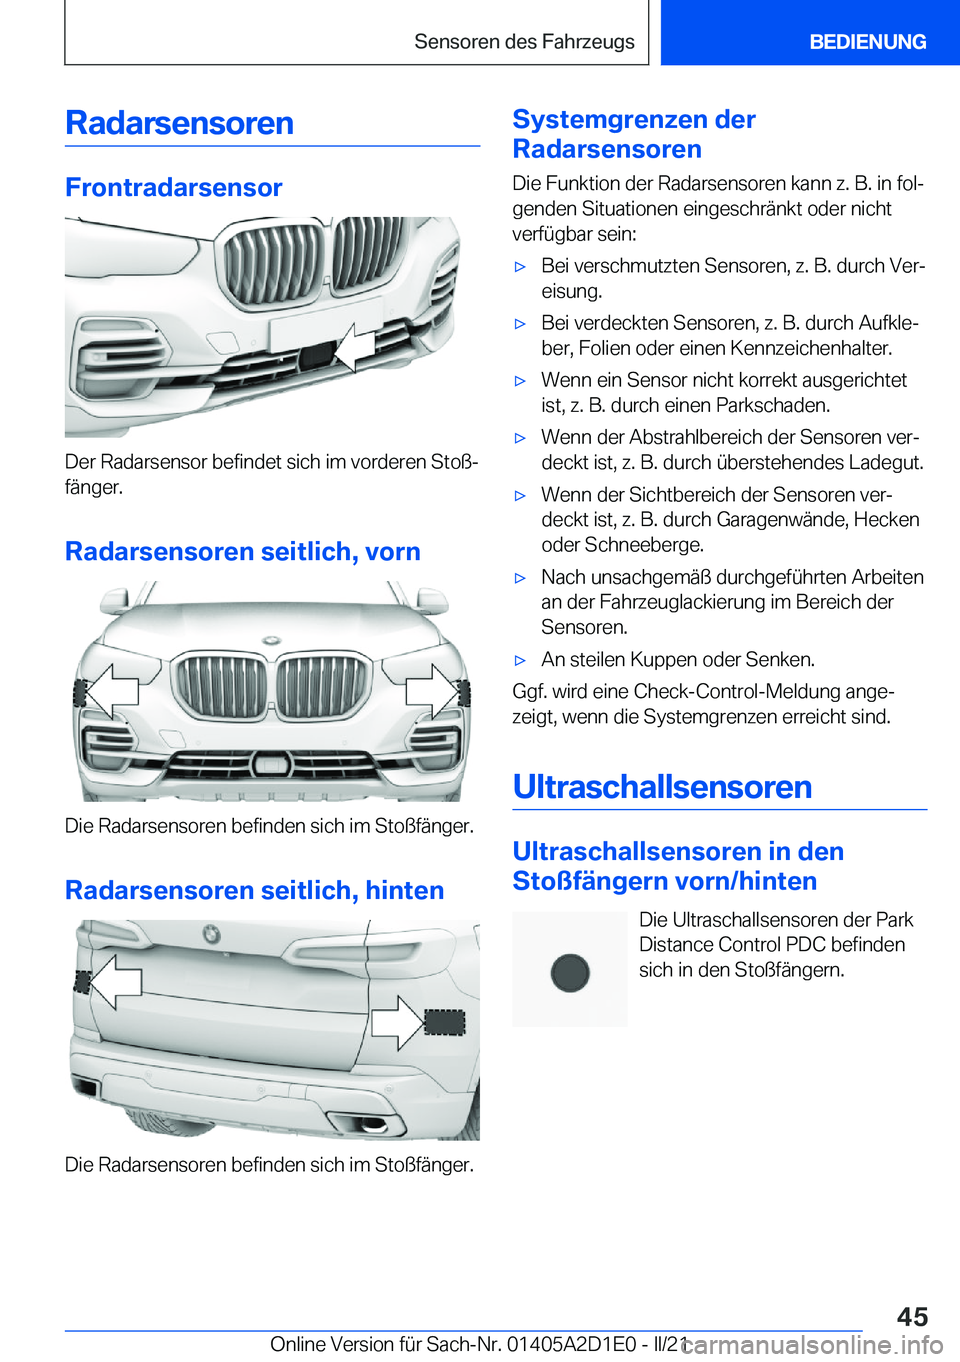 BMW X6 M 2021  Betriebsanleitungen (in German) �R�a�d�a�r�s�e�n�s�o�r�e�n
�F�r�o�n�t�r�a�d�a�r�s�e�n�s�o�r
�D�e�r��R�a�d�a�r�s�e�n�s�o�r��b�e�f�i�n�d�e�t��s�i�c�h��i�m��v�o�r�d�e�r�e�n��S�t�o�